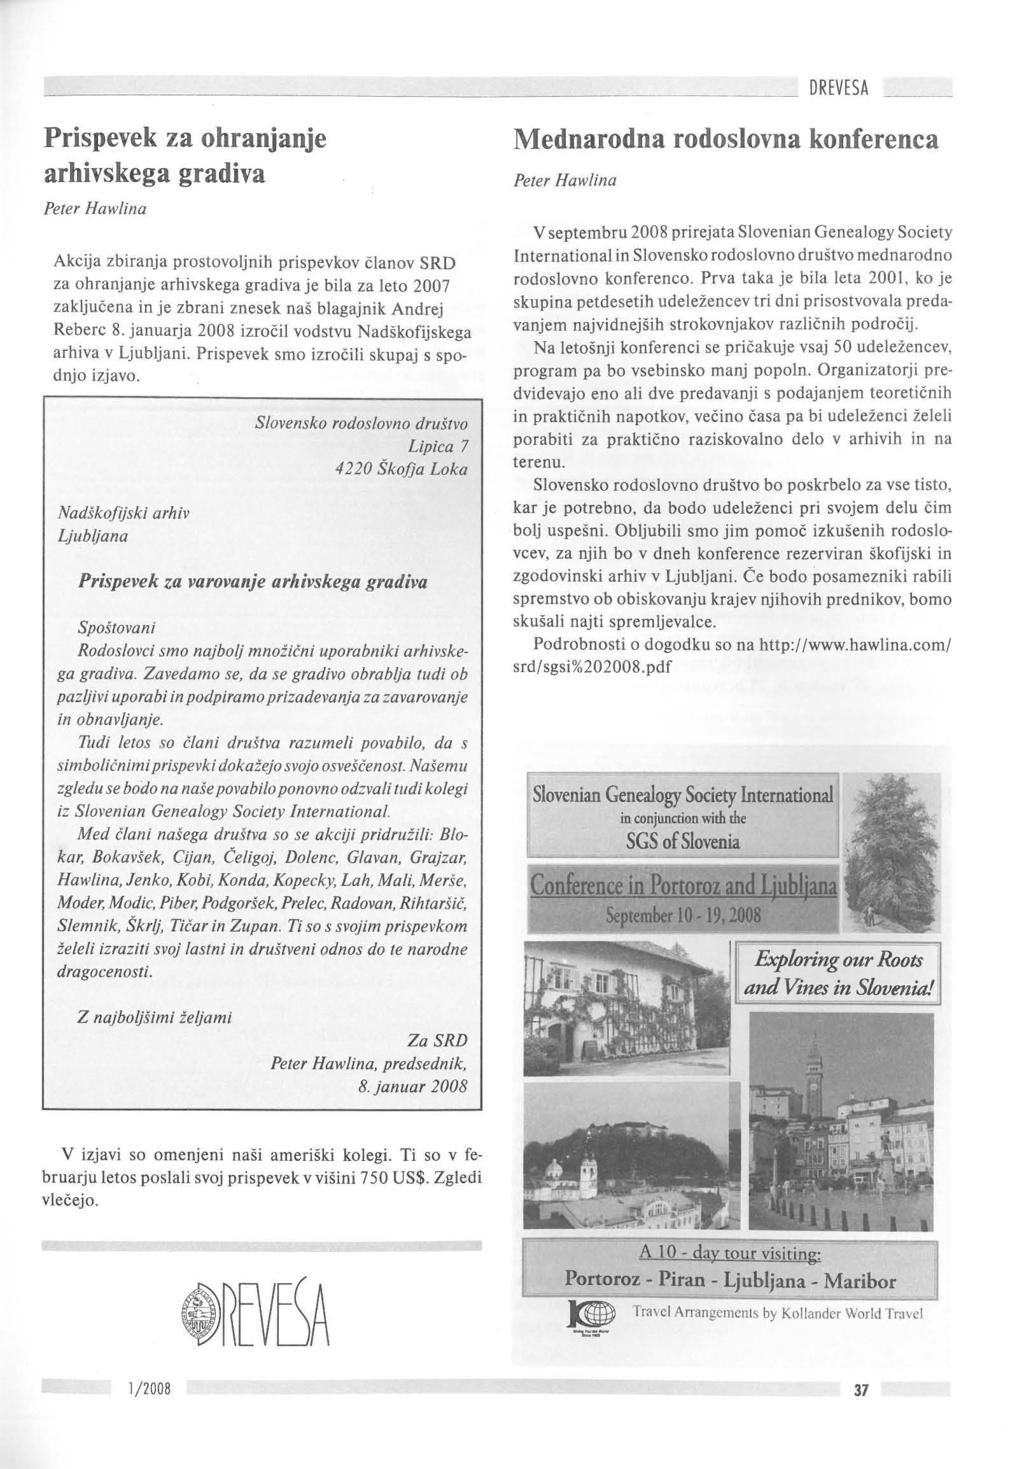 Prispevek za ohranjanje arhivskega gradiva Peter Hawlina Akcija zbiranja prostovoljnih prispevkov clanov SRD za ohranjanje arhivskega grad iva je bila za leta 2007 zakljucena in je zbrani znesek nas